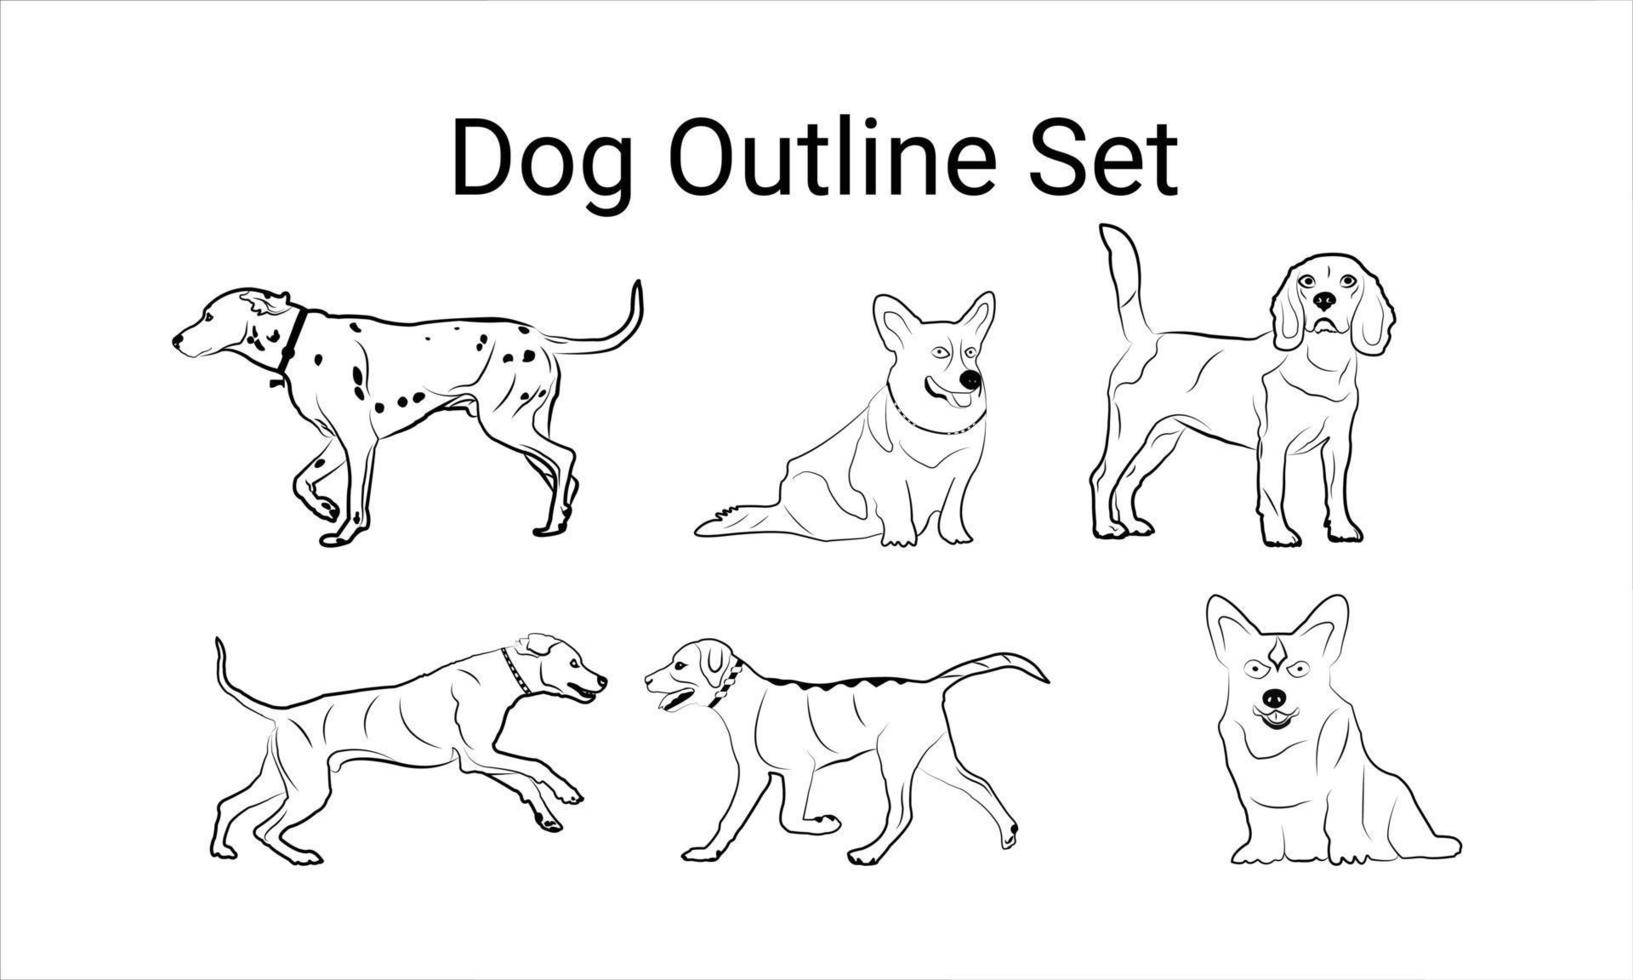 Hundeumriss-Symbol. Haustier-Vektor-Illustration. Hundesymbol isoliert. vektor